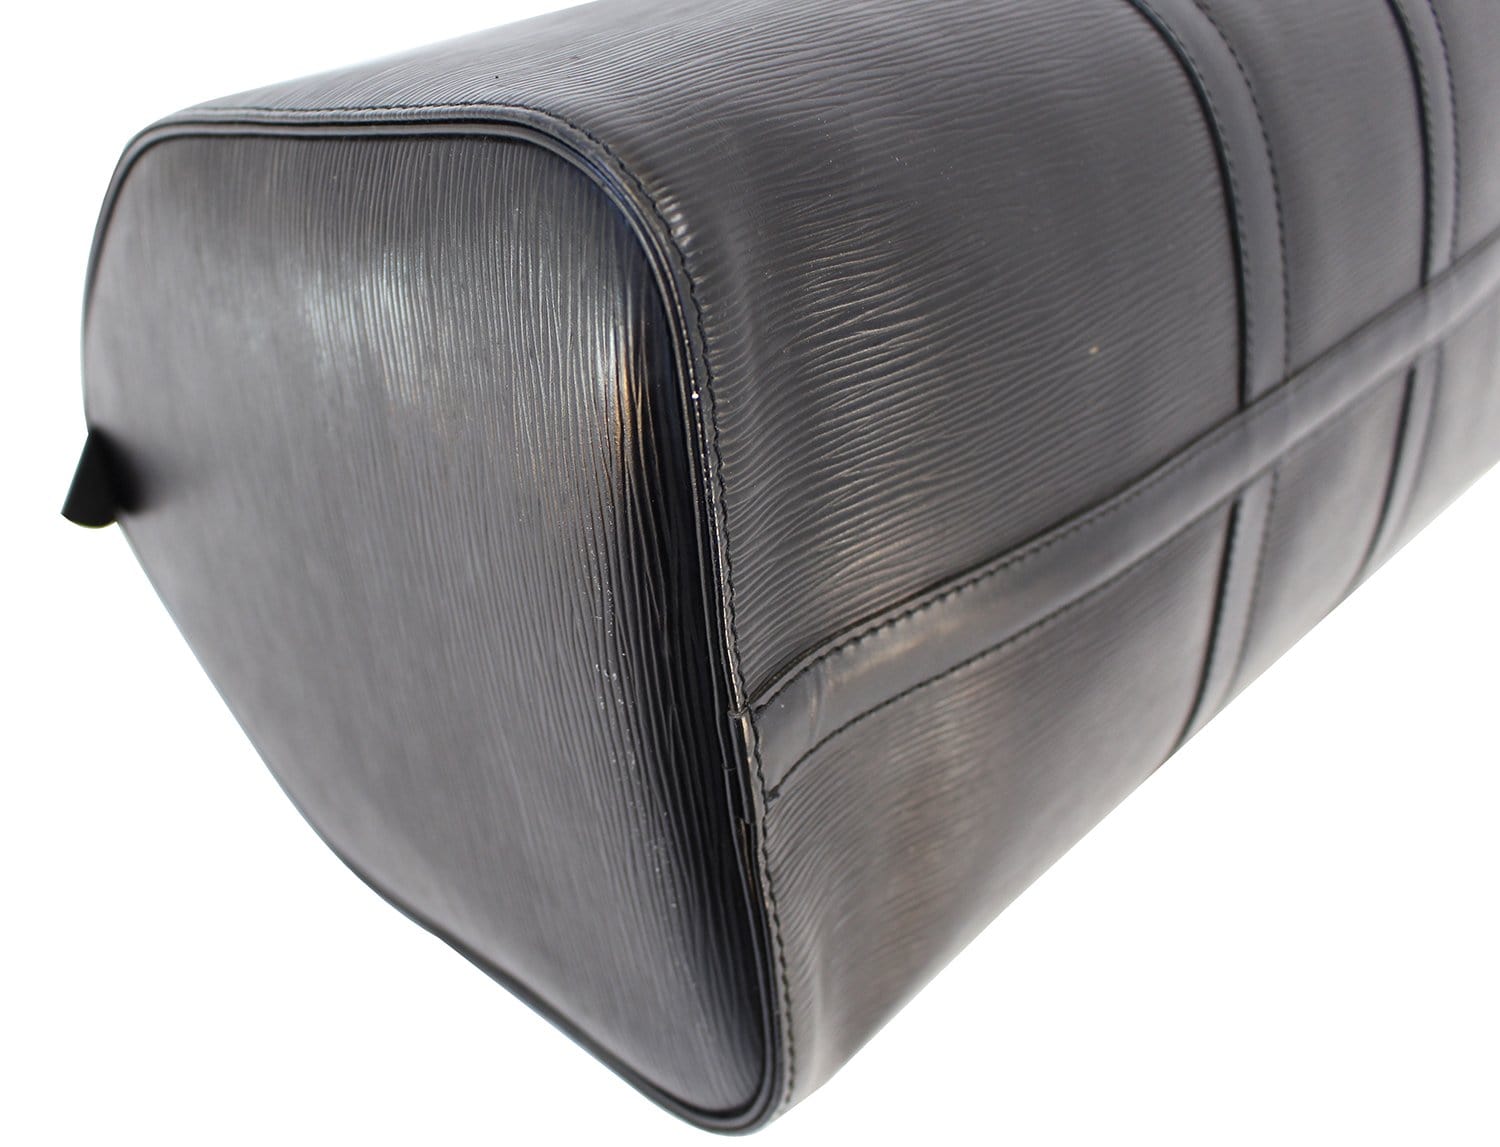 Authentic LOUIS VUITTON Epi Leather Black Keepall 45 Boston Bag E3286